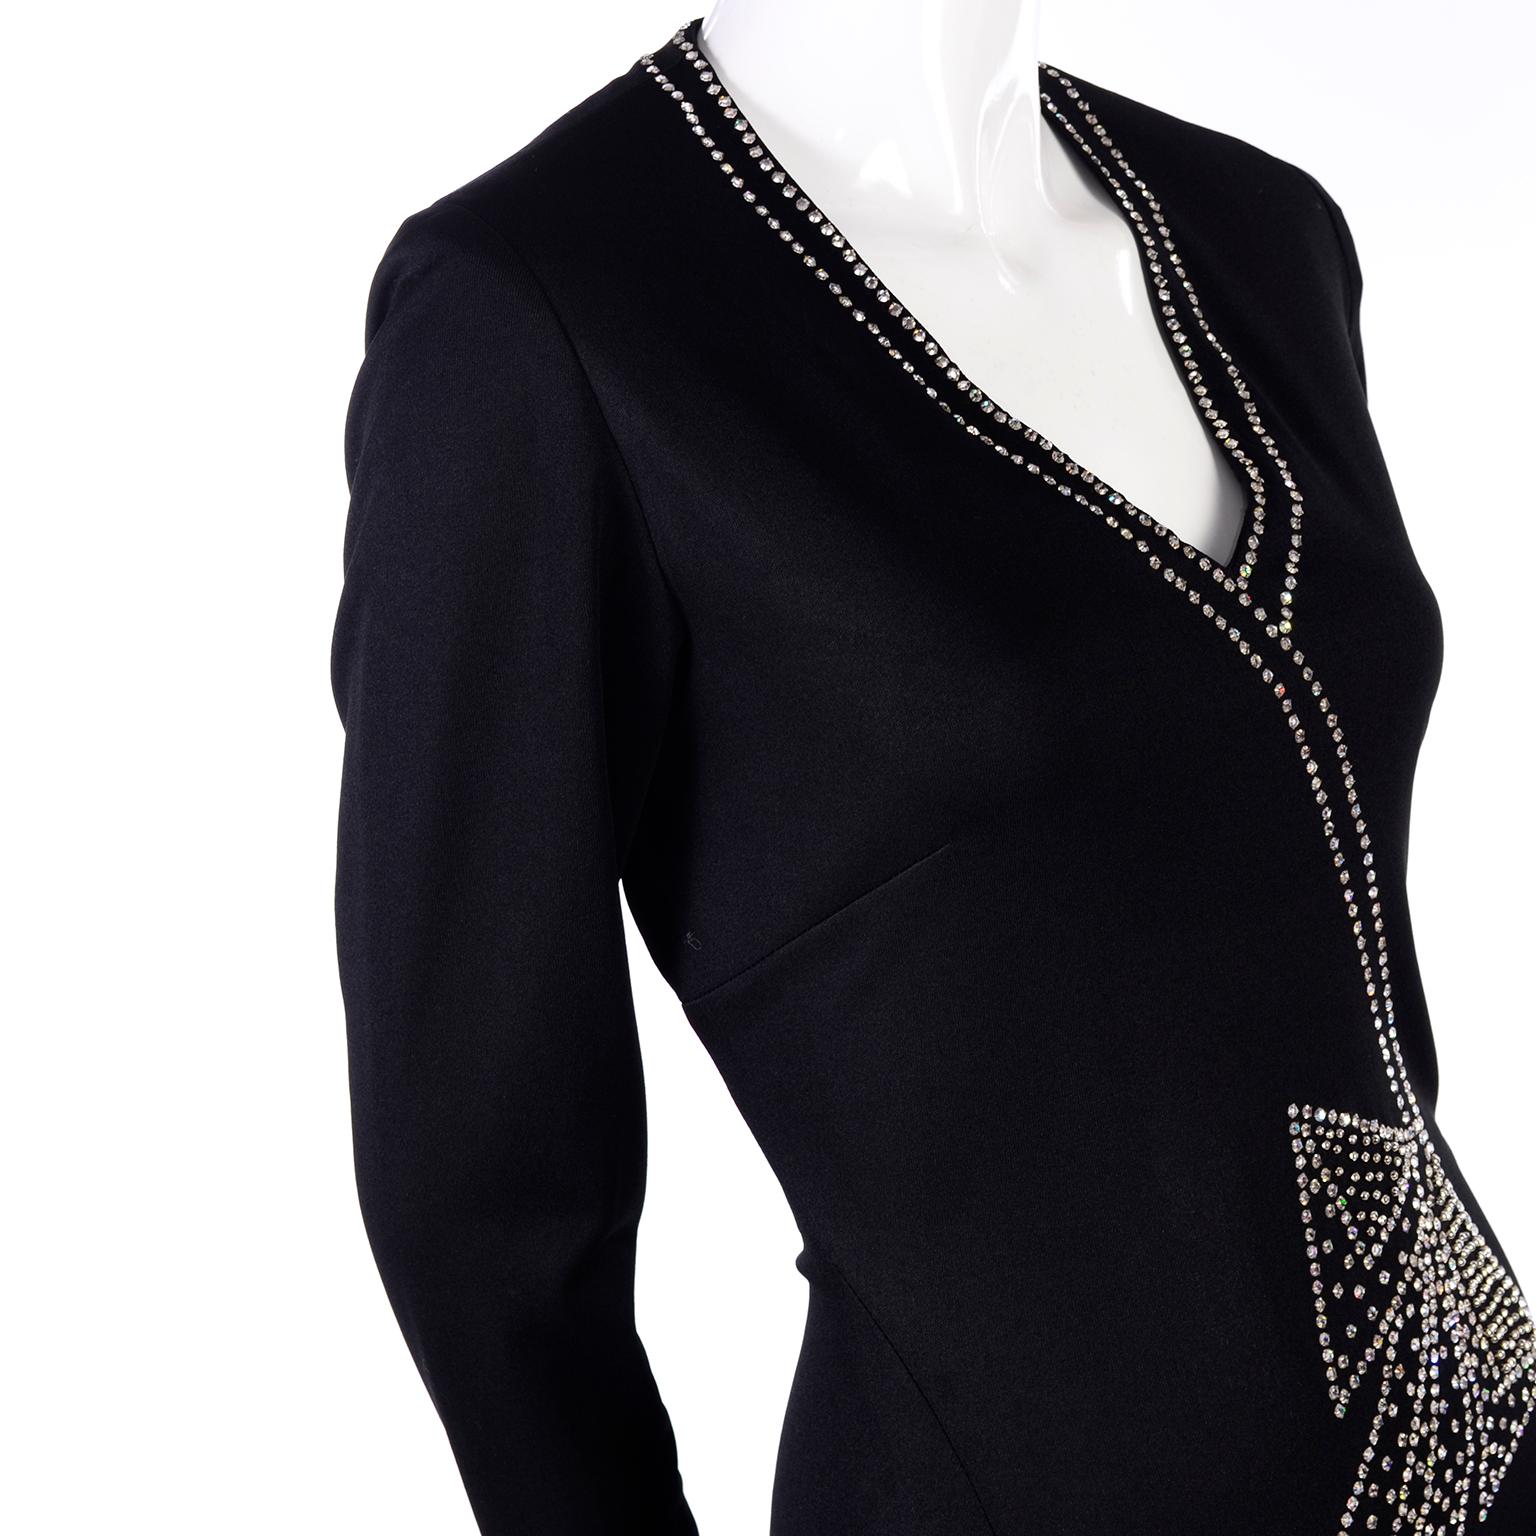 Rosalee 1960er Jahre Brooklyn Boutique Vintage schwarzes Kleid Trompe L'oeil Strass Schleife (Schwarz)